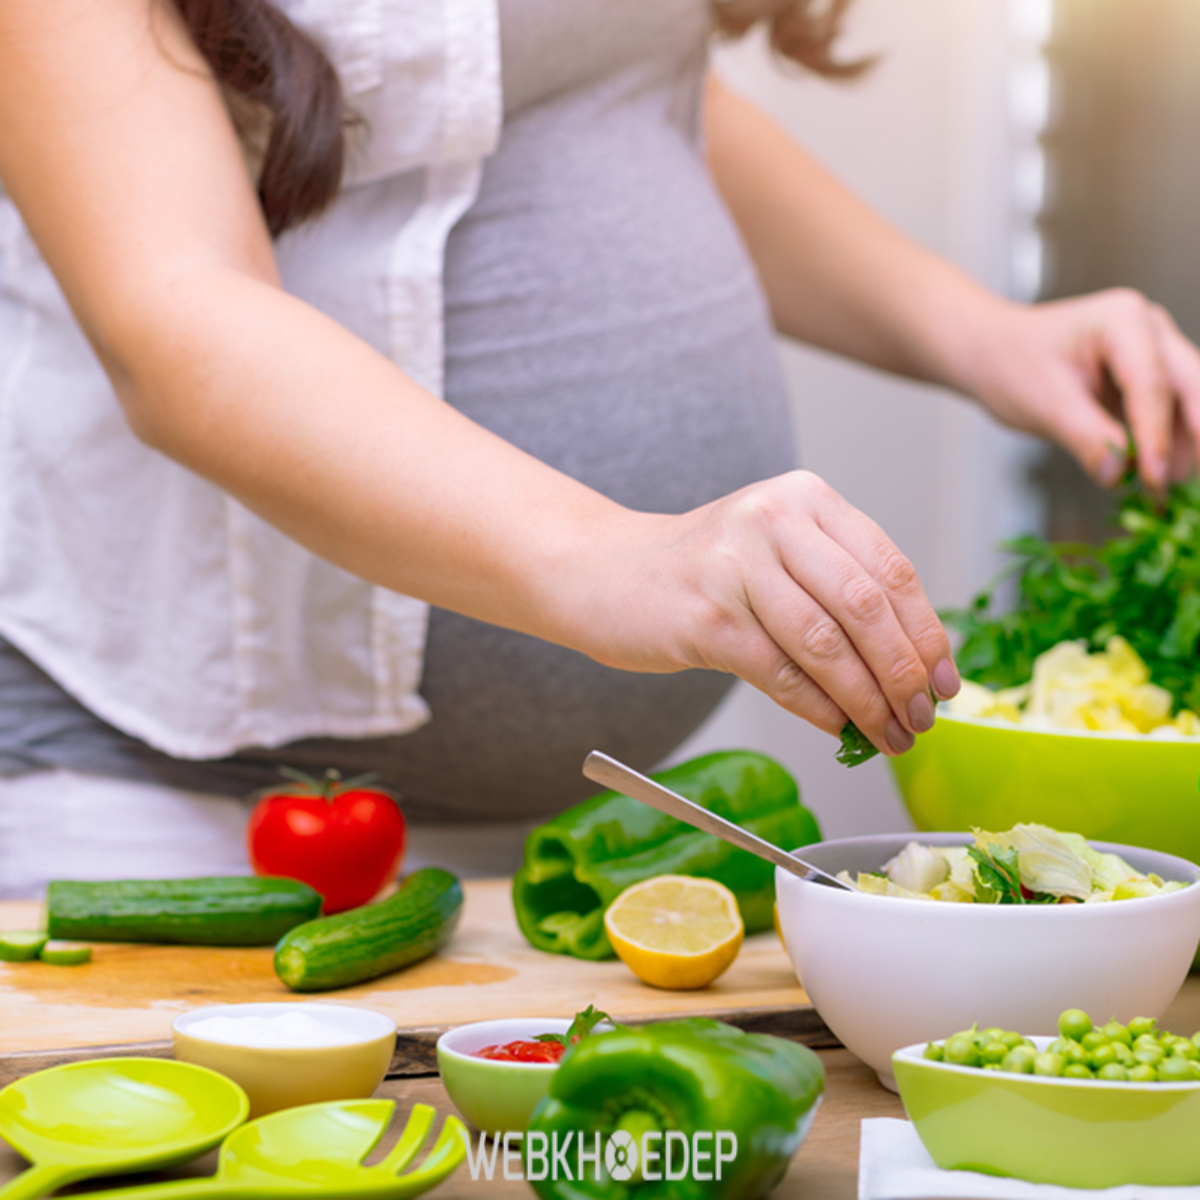 Nên chẩn đoán phụ nữ mang thai có rối loạn ăn uống hay không để có biện pháp hỗ trợ phù hợp